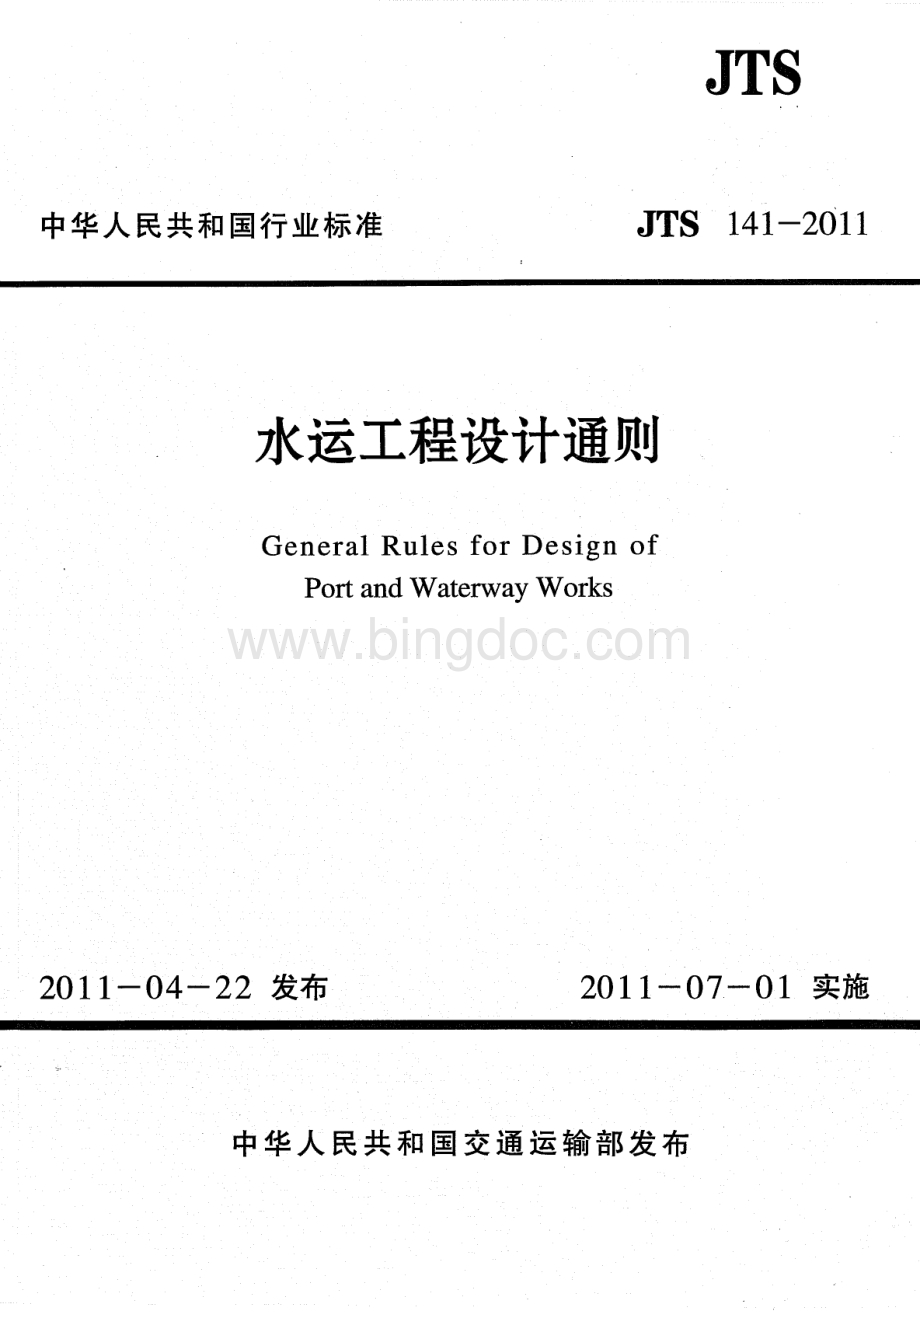 JTS 141-2011 水运工程设计通则.pdf